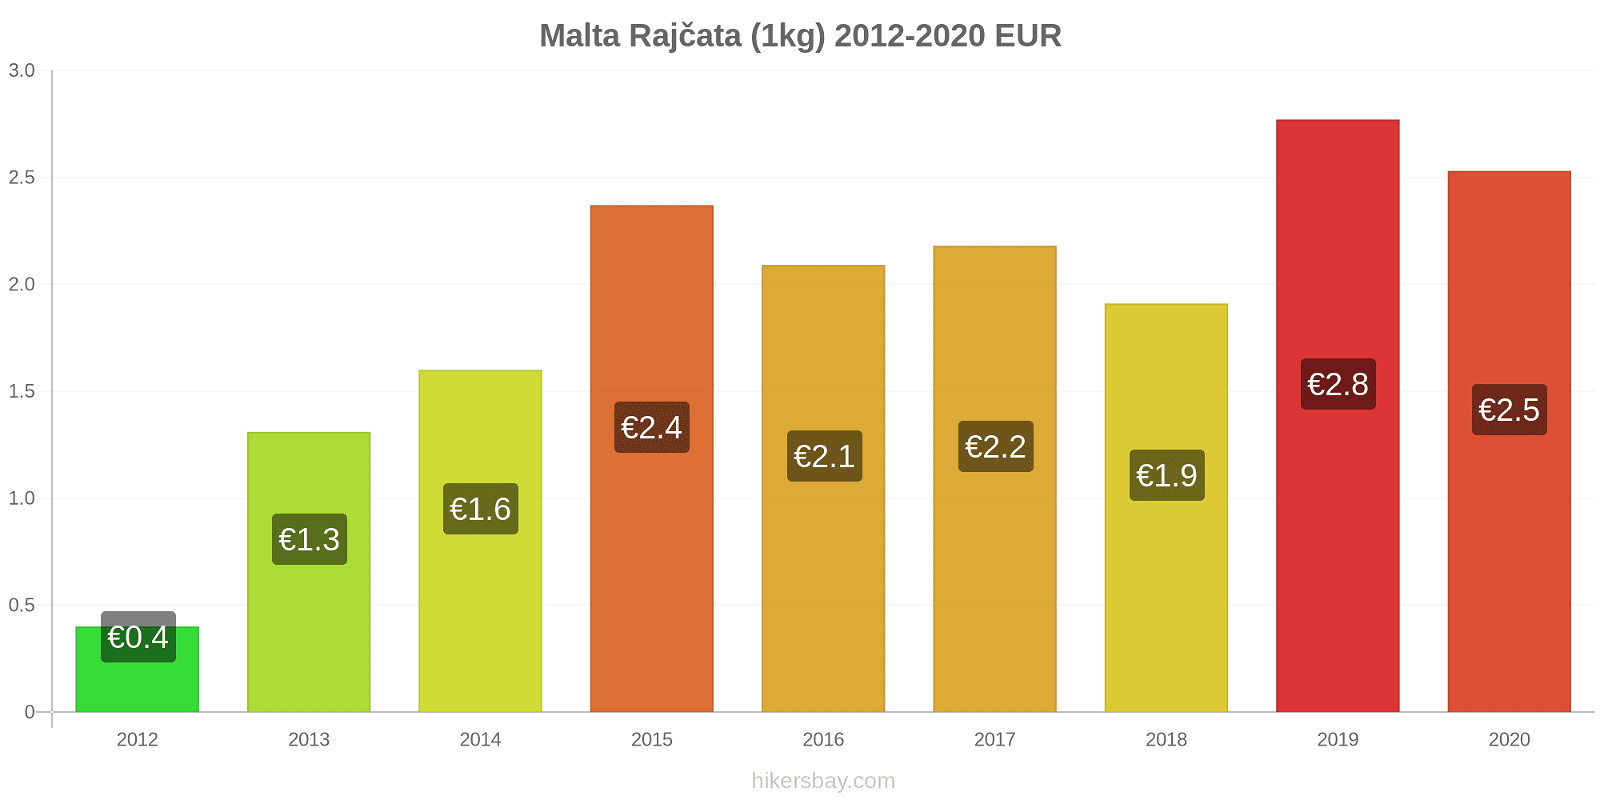 Malta změny cen Rajčata (1kg) hikersbay.com